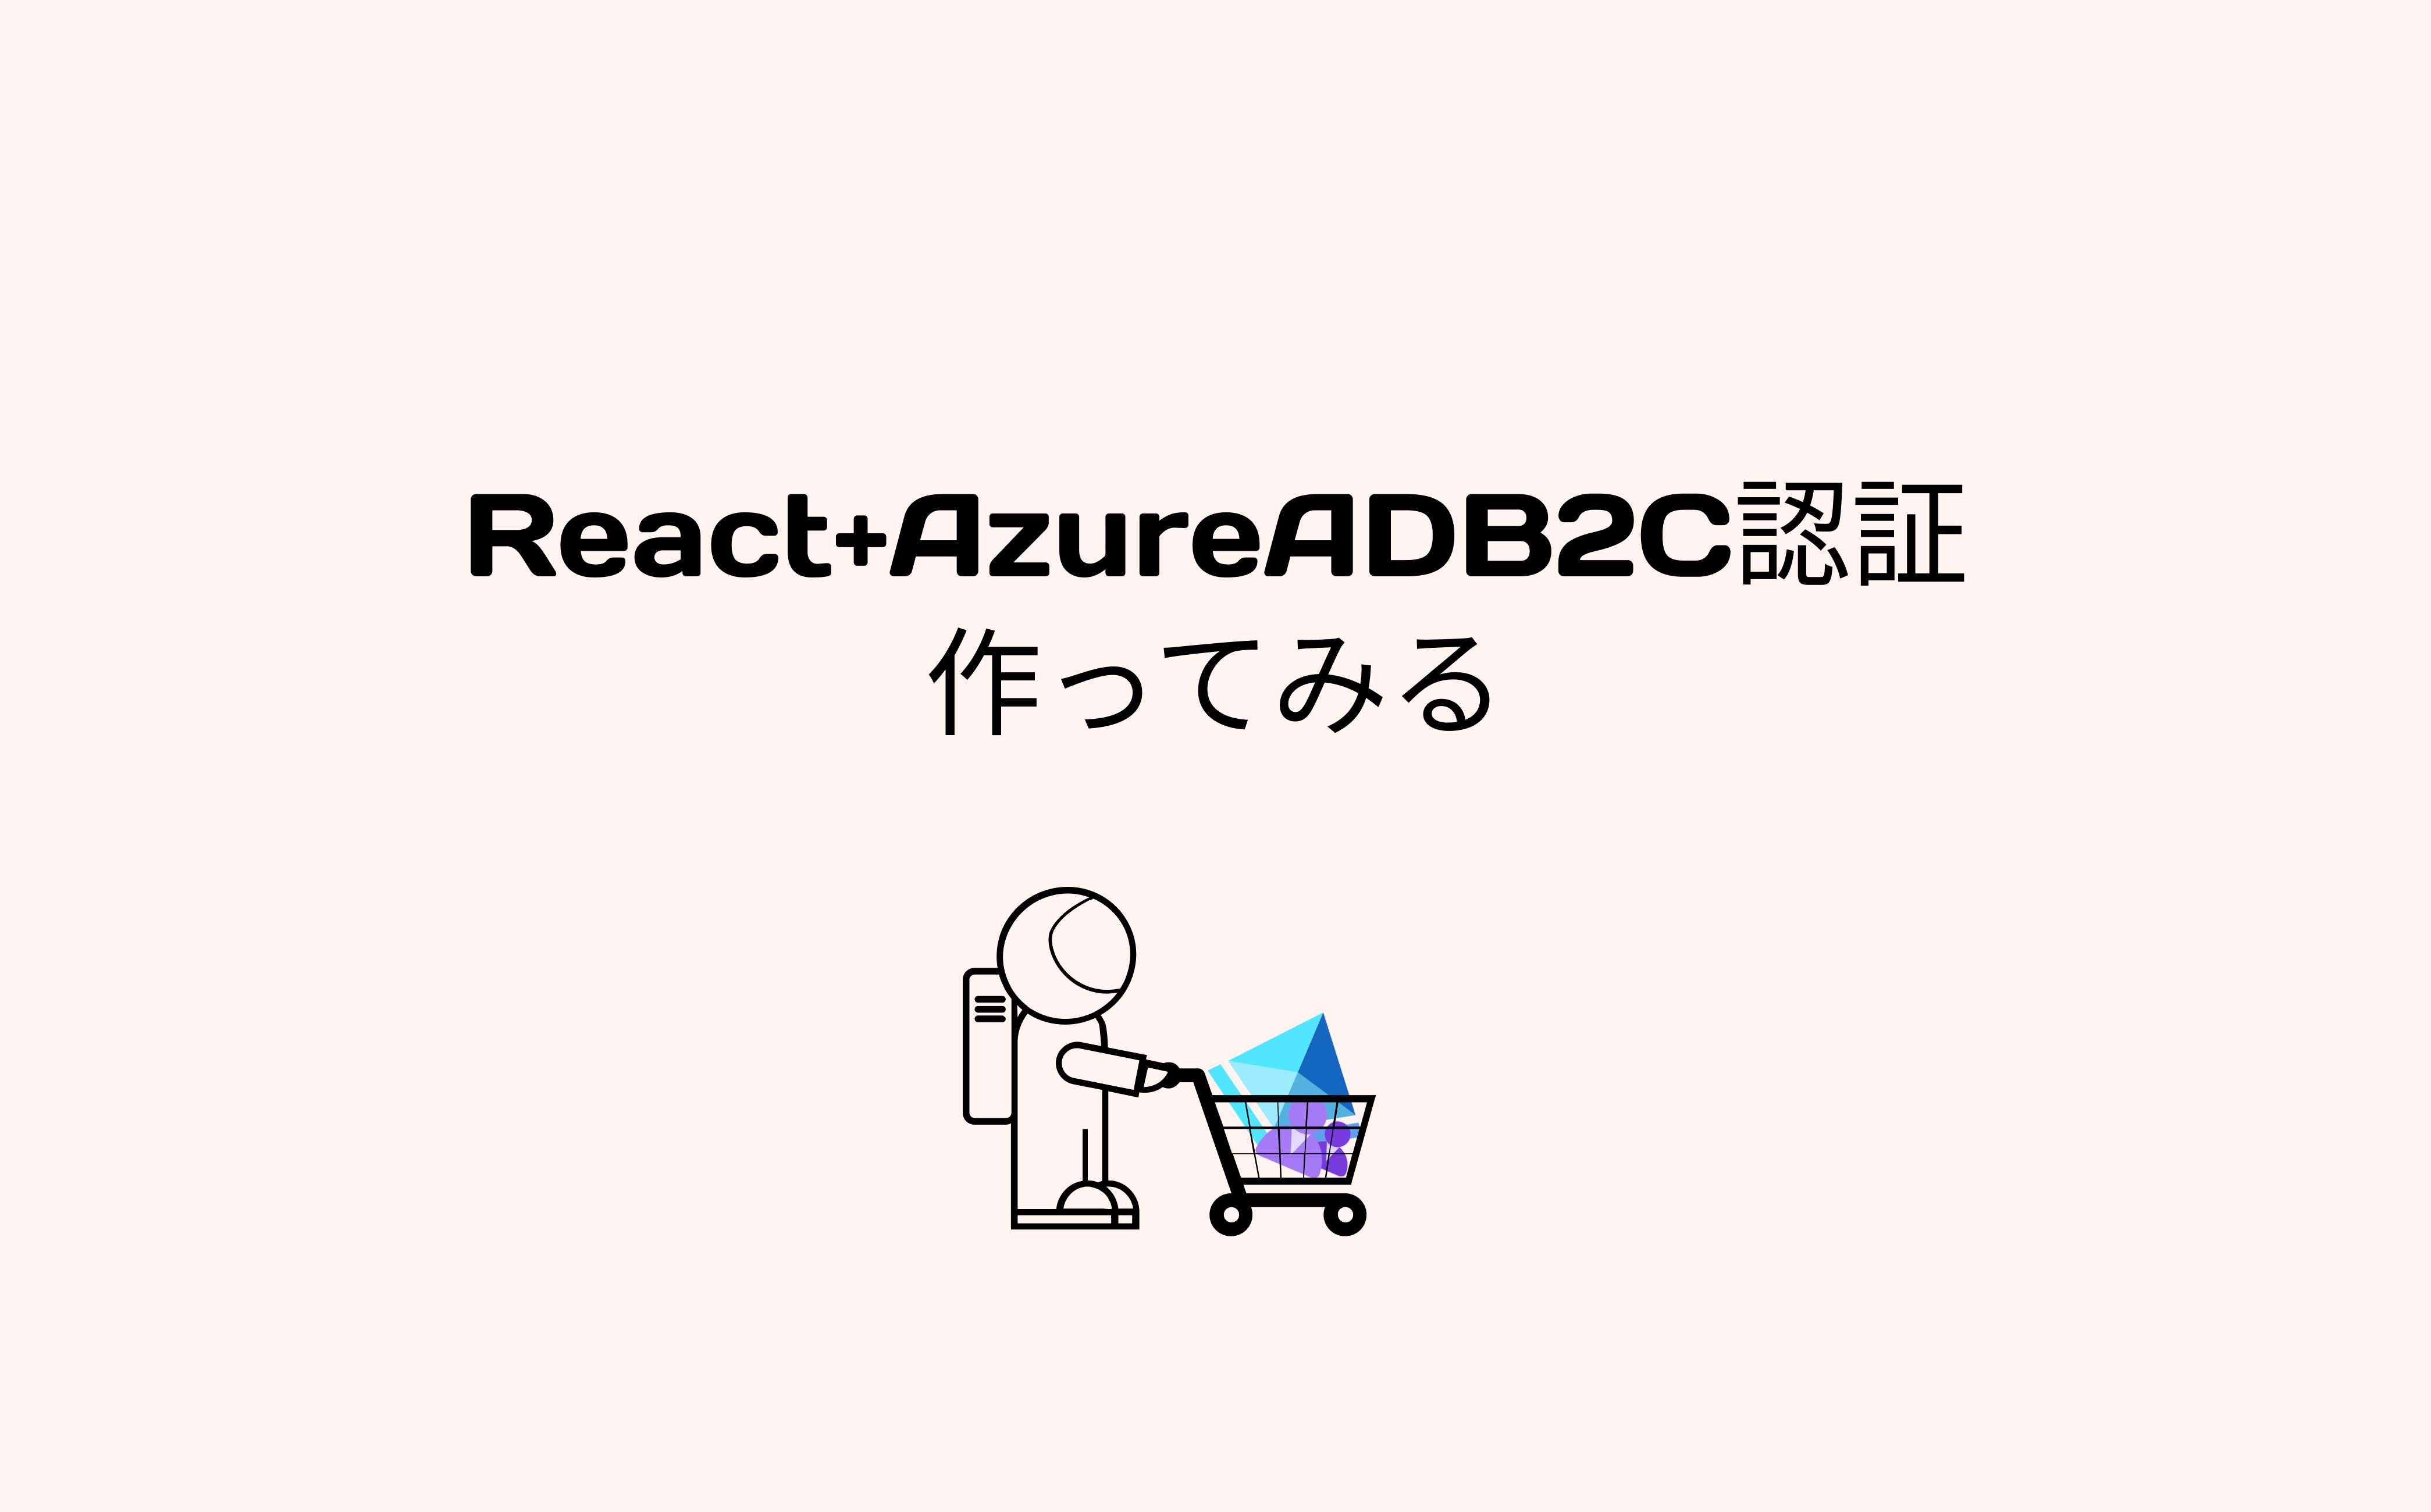 Azure AD B2C 認証ページを作ってみる【React】 | SIOS Tech. Lab